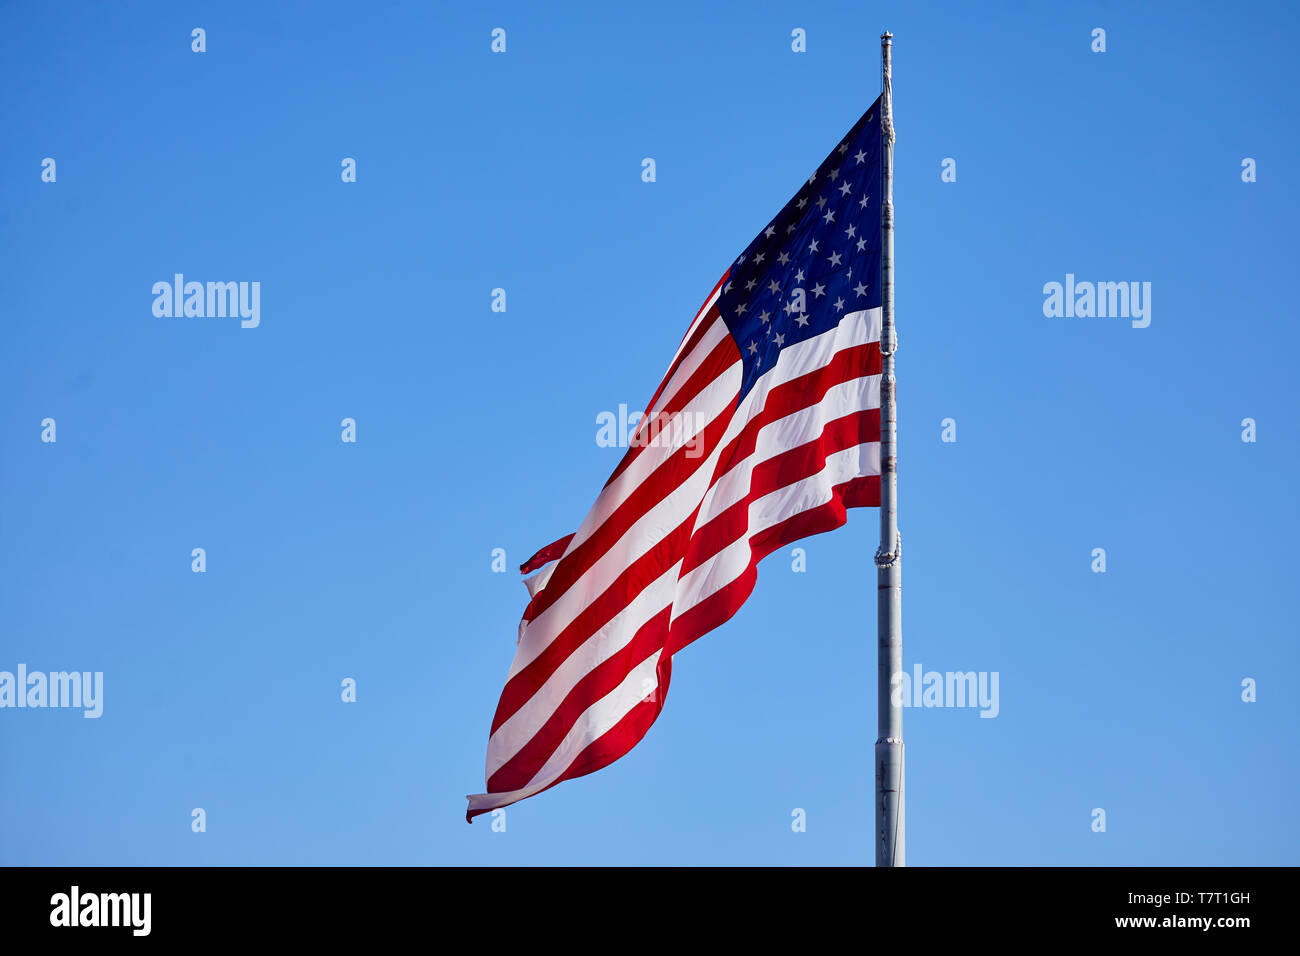 L'historique Route 66 city Williams, le drapeau américain, les Stars and Stripes, rouge, blanc et bleu ; ancienne gloire ; The Star-Spangled Banner ; US flag ; United S Banque D'Images